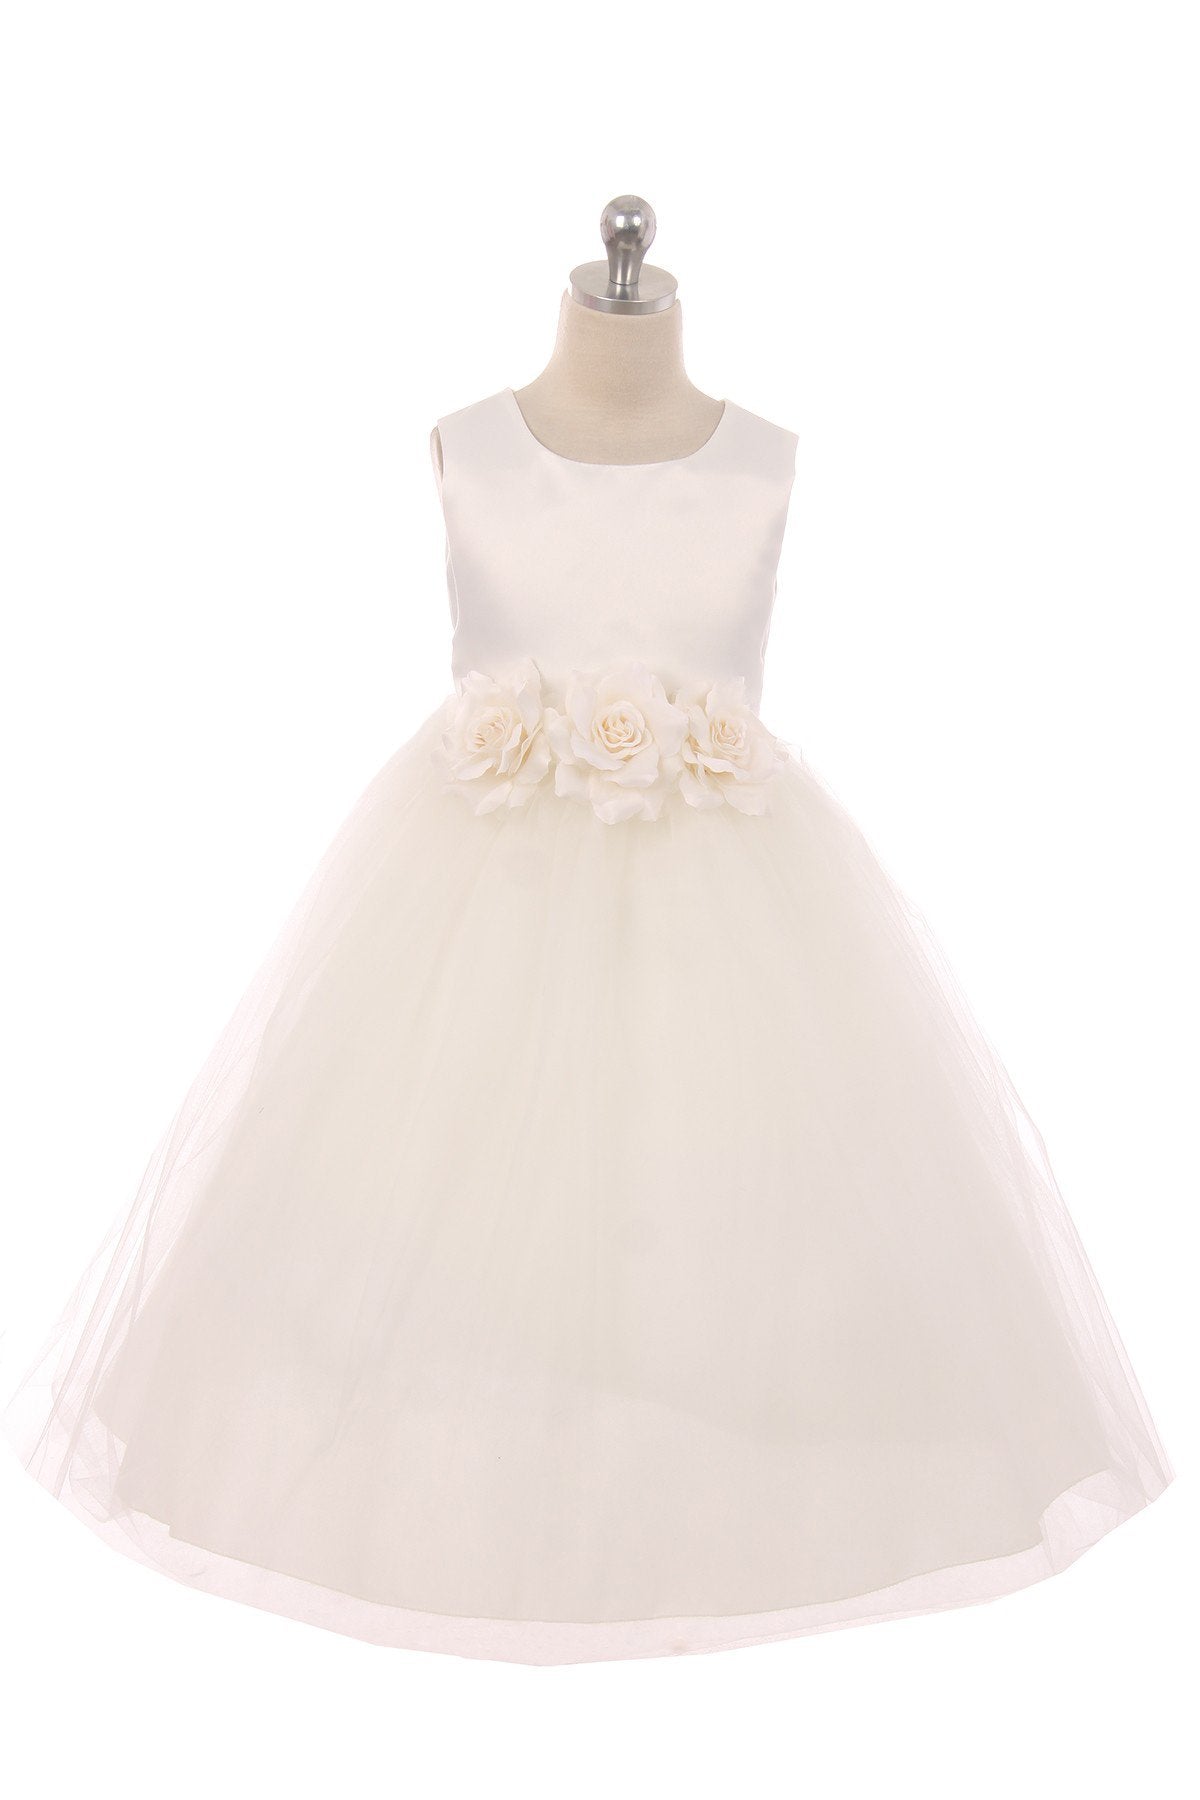 Satin 3 Flower Ivory Dress – Kid's Dream